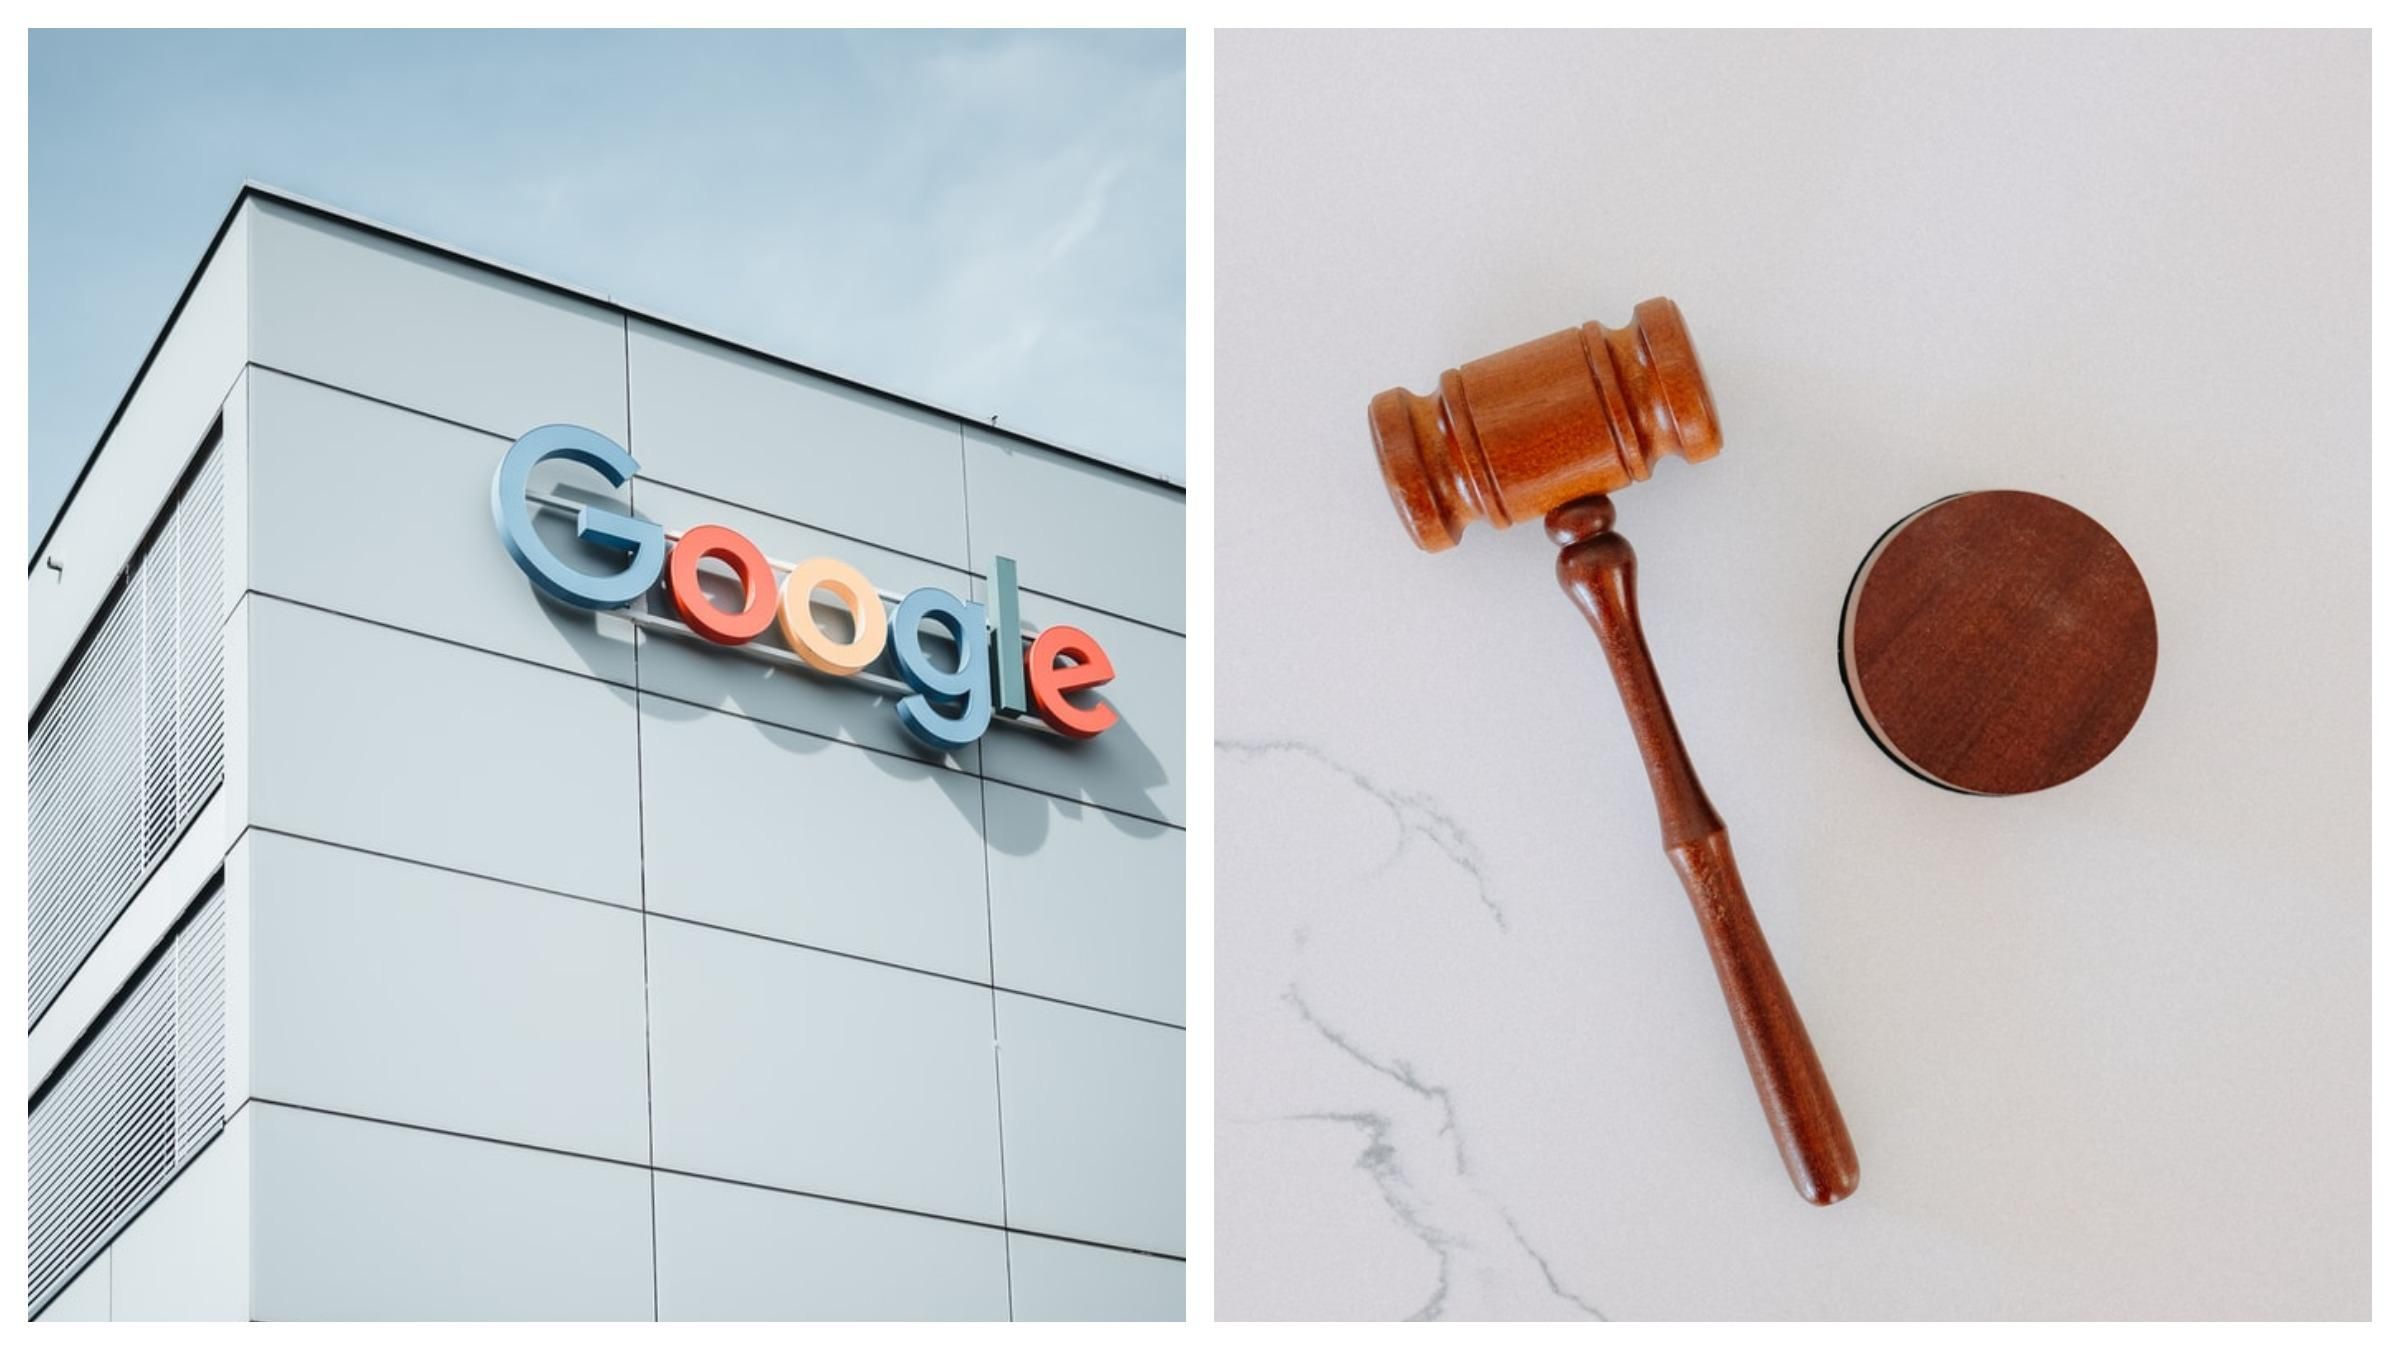 Євросоюз оштрафує Google на 2,4 мільярда євро: компанія програла суд - Новини технологій - Техно